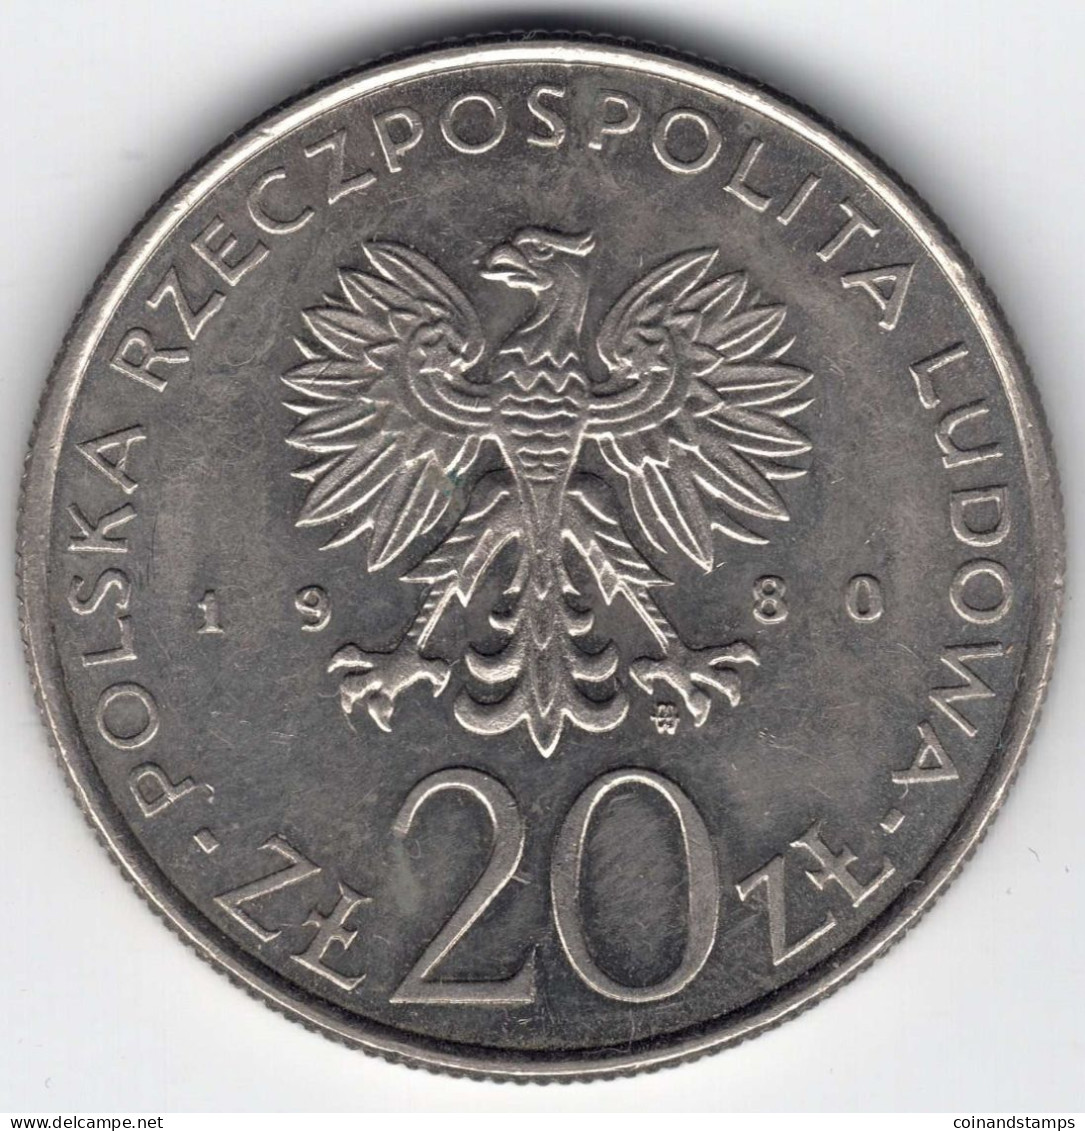 Polen 20 Zloty 1980 (Cu./Ni.) XXII. Olympische Spiele Moskau, MzSt. Warschau, KM#108, Ss/vz - Pologne